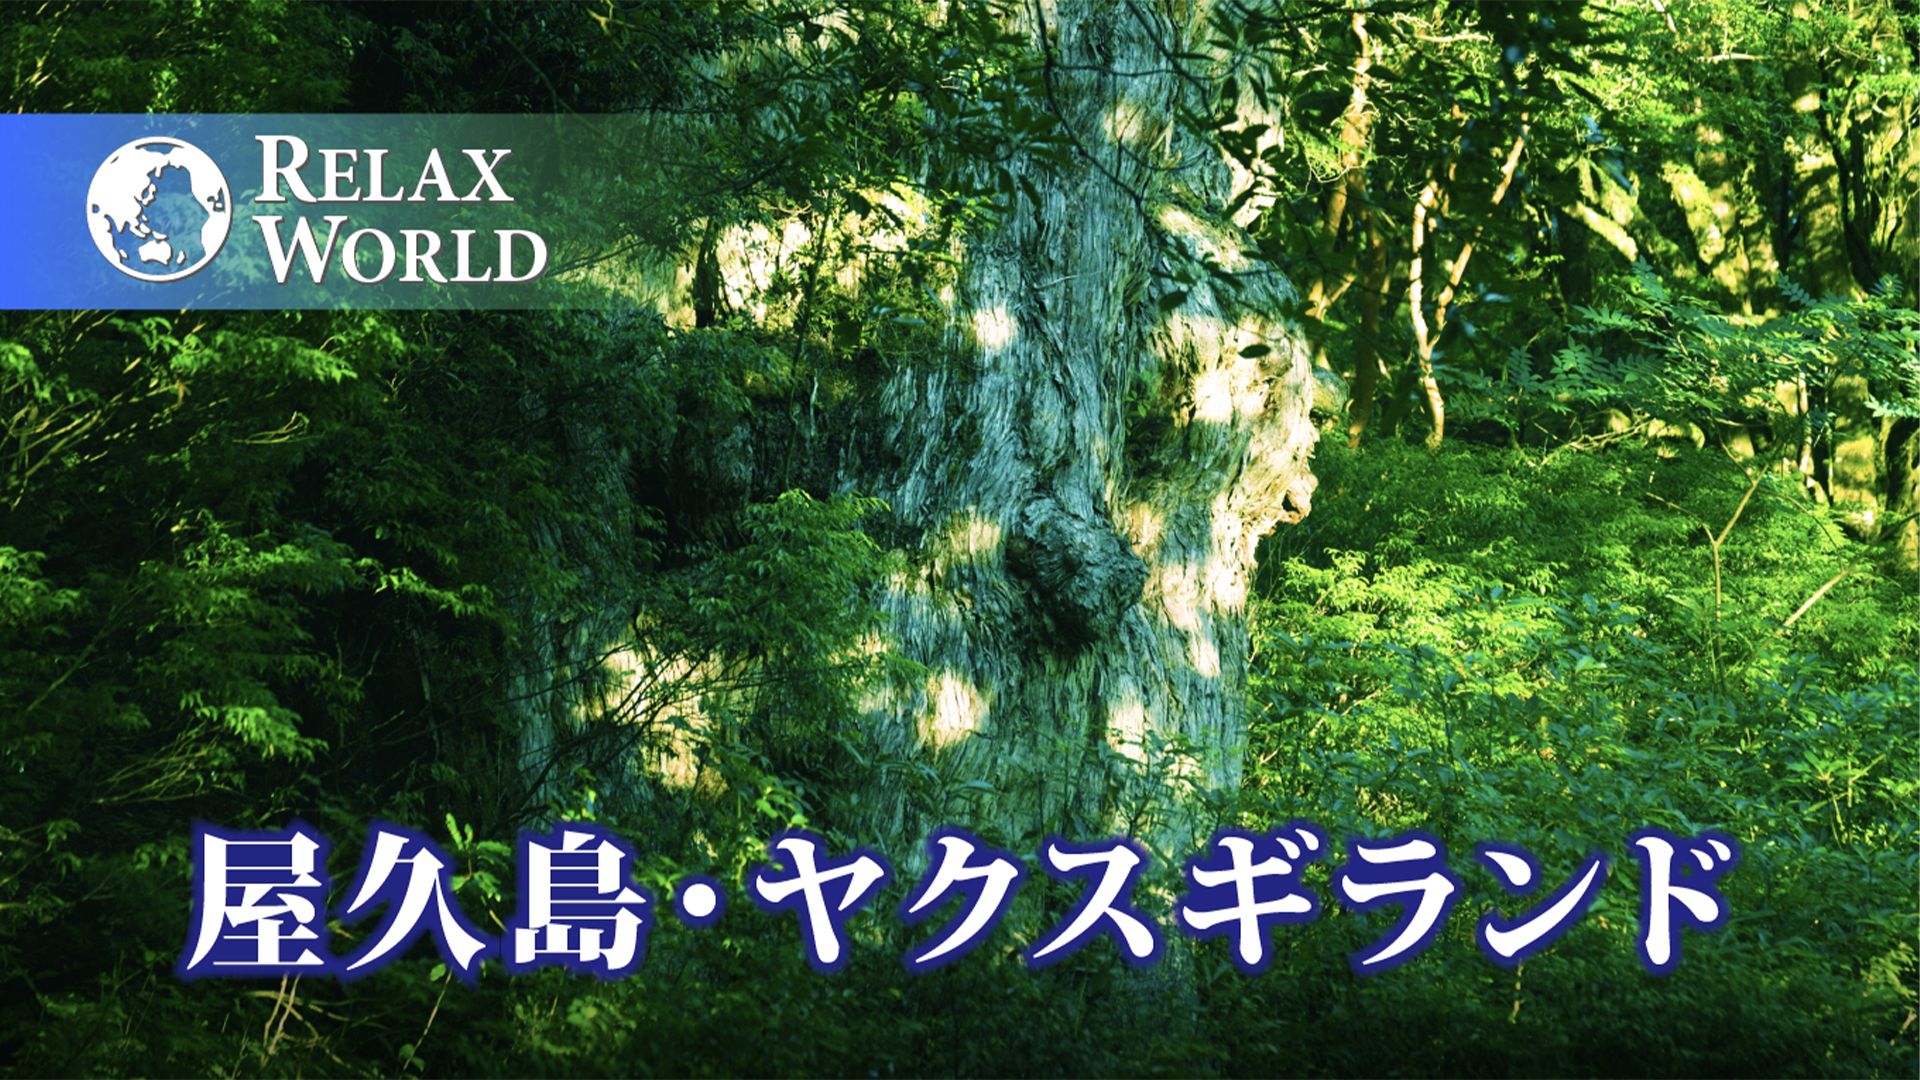 屋久島・ヤクスギランド【RELAX WORLD】